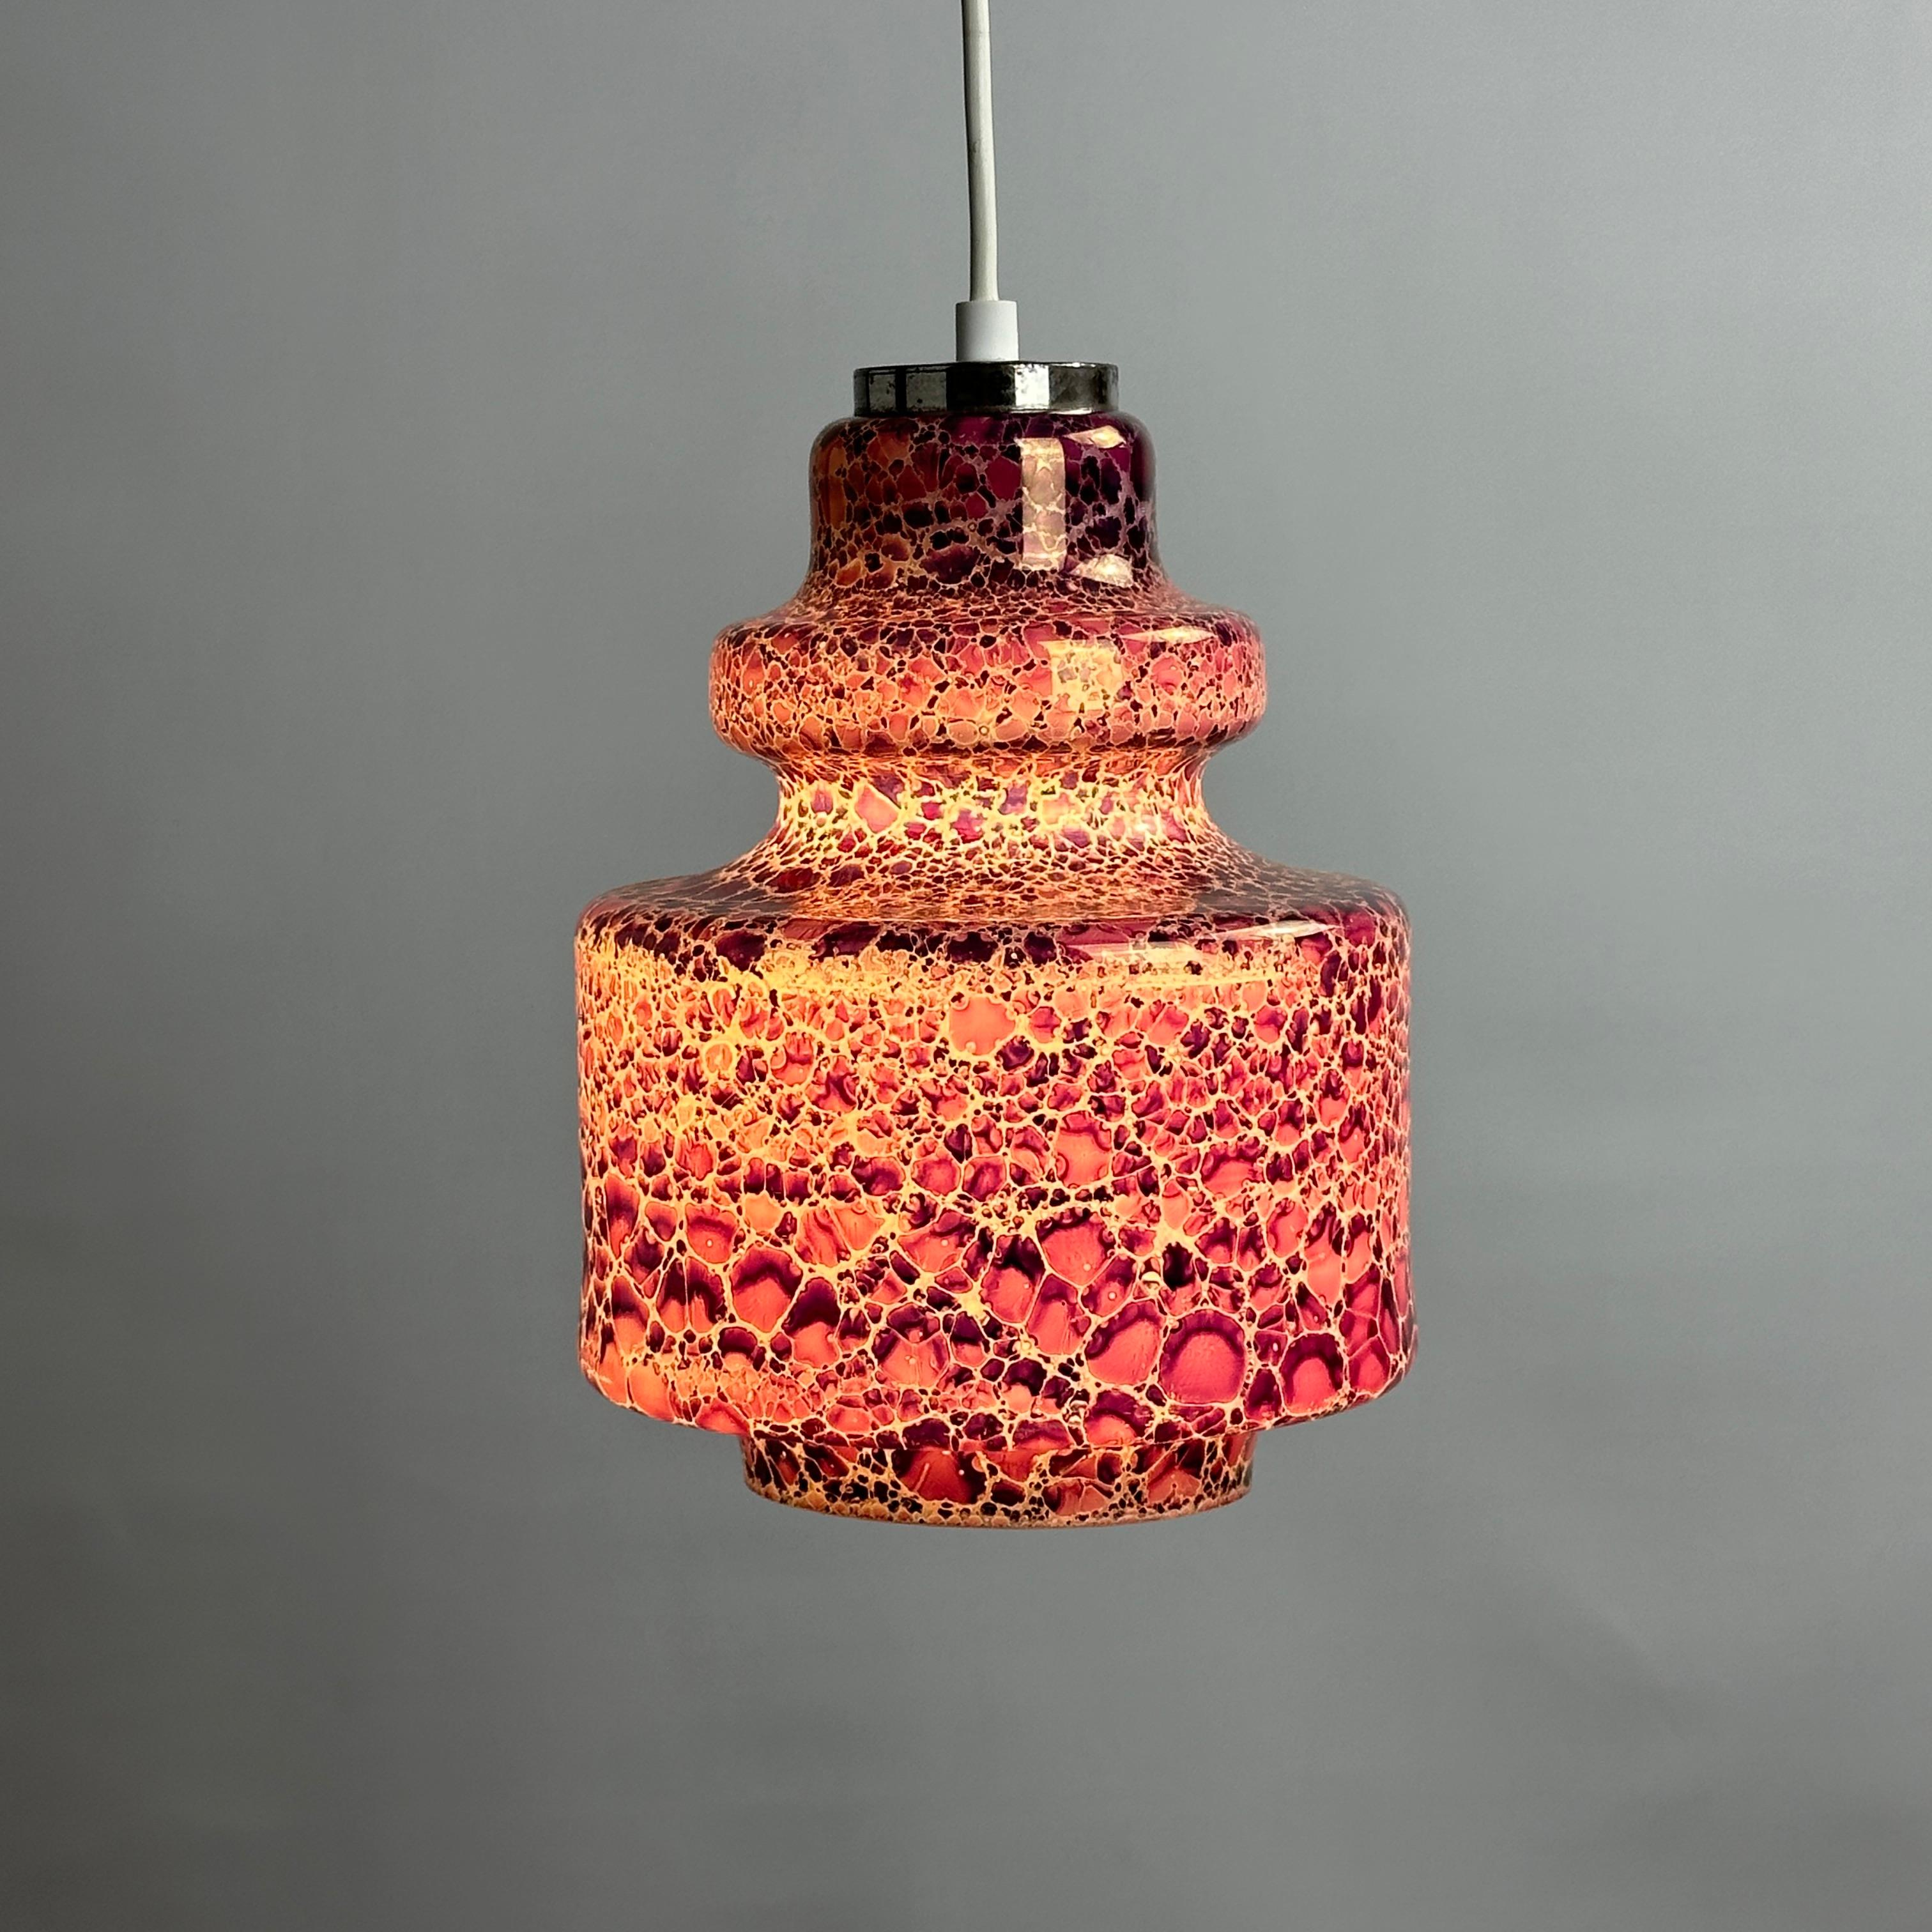 Cette superbe pièce d'artisanat néerlandais de la firme Herda a été fabriquée vers 1970. La lampe est fabriquée en verre opalin et présente un motif de peau de serpent. Lorsqu'elle est allumée, la couleur violette s'illumine de façon